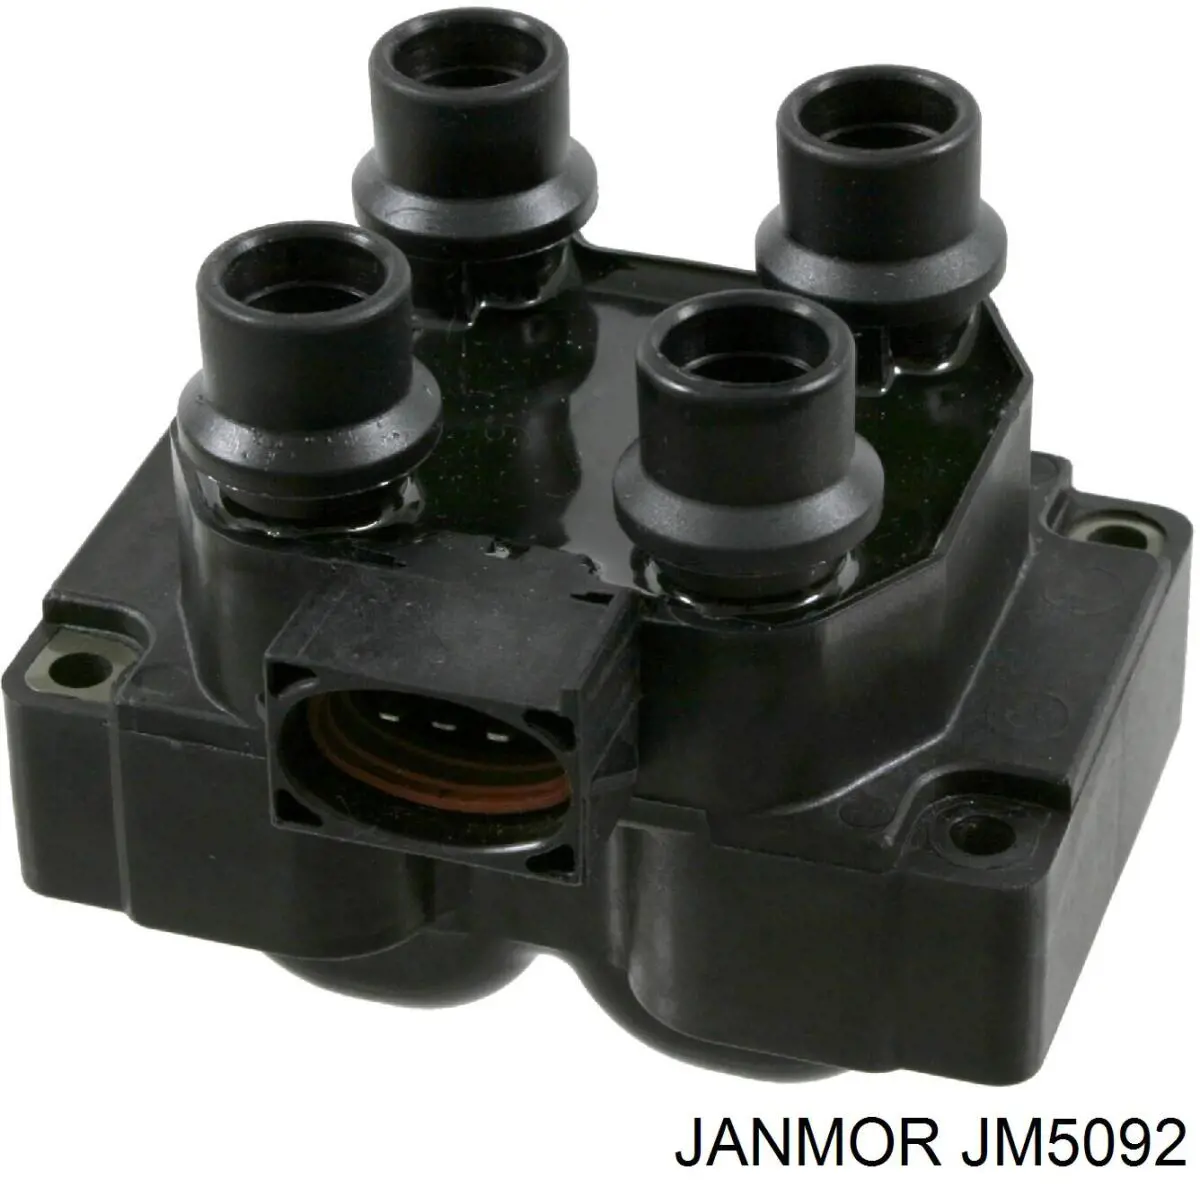 JM5092 Janmor bobina